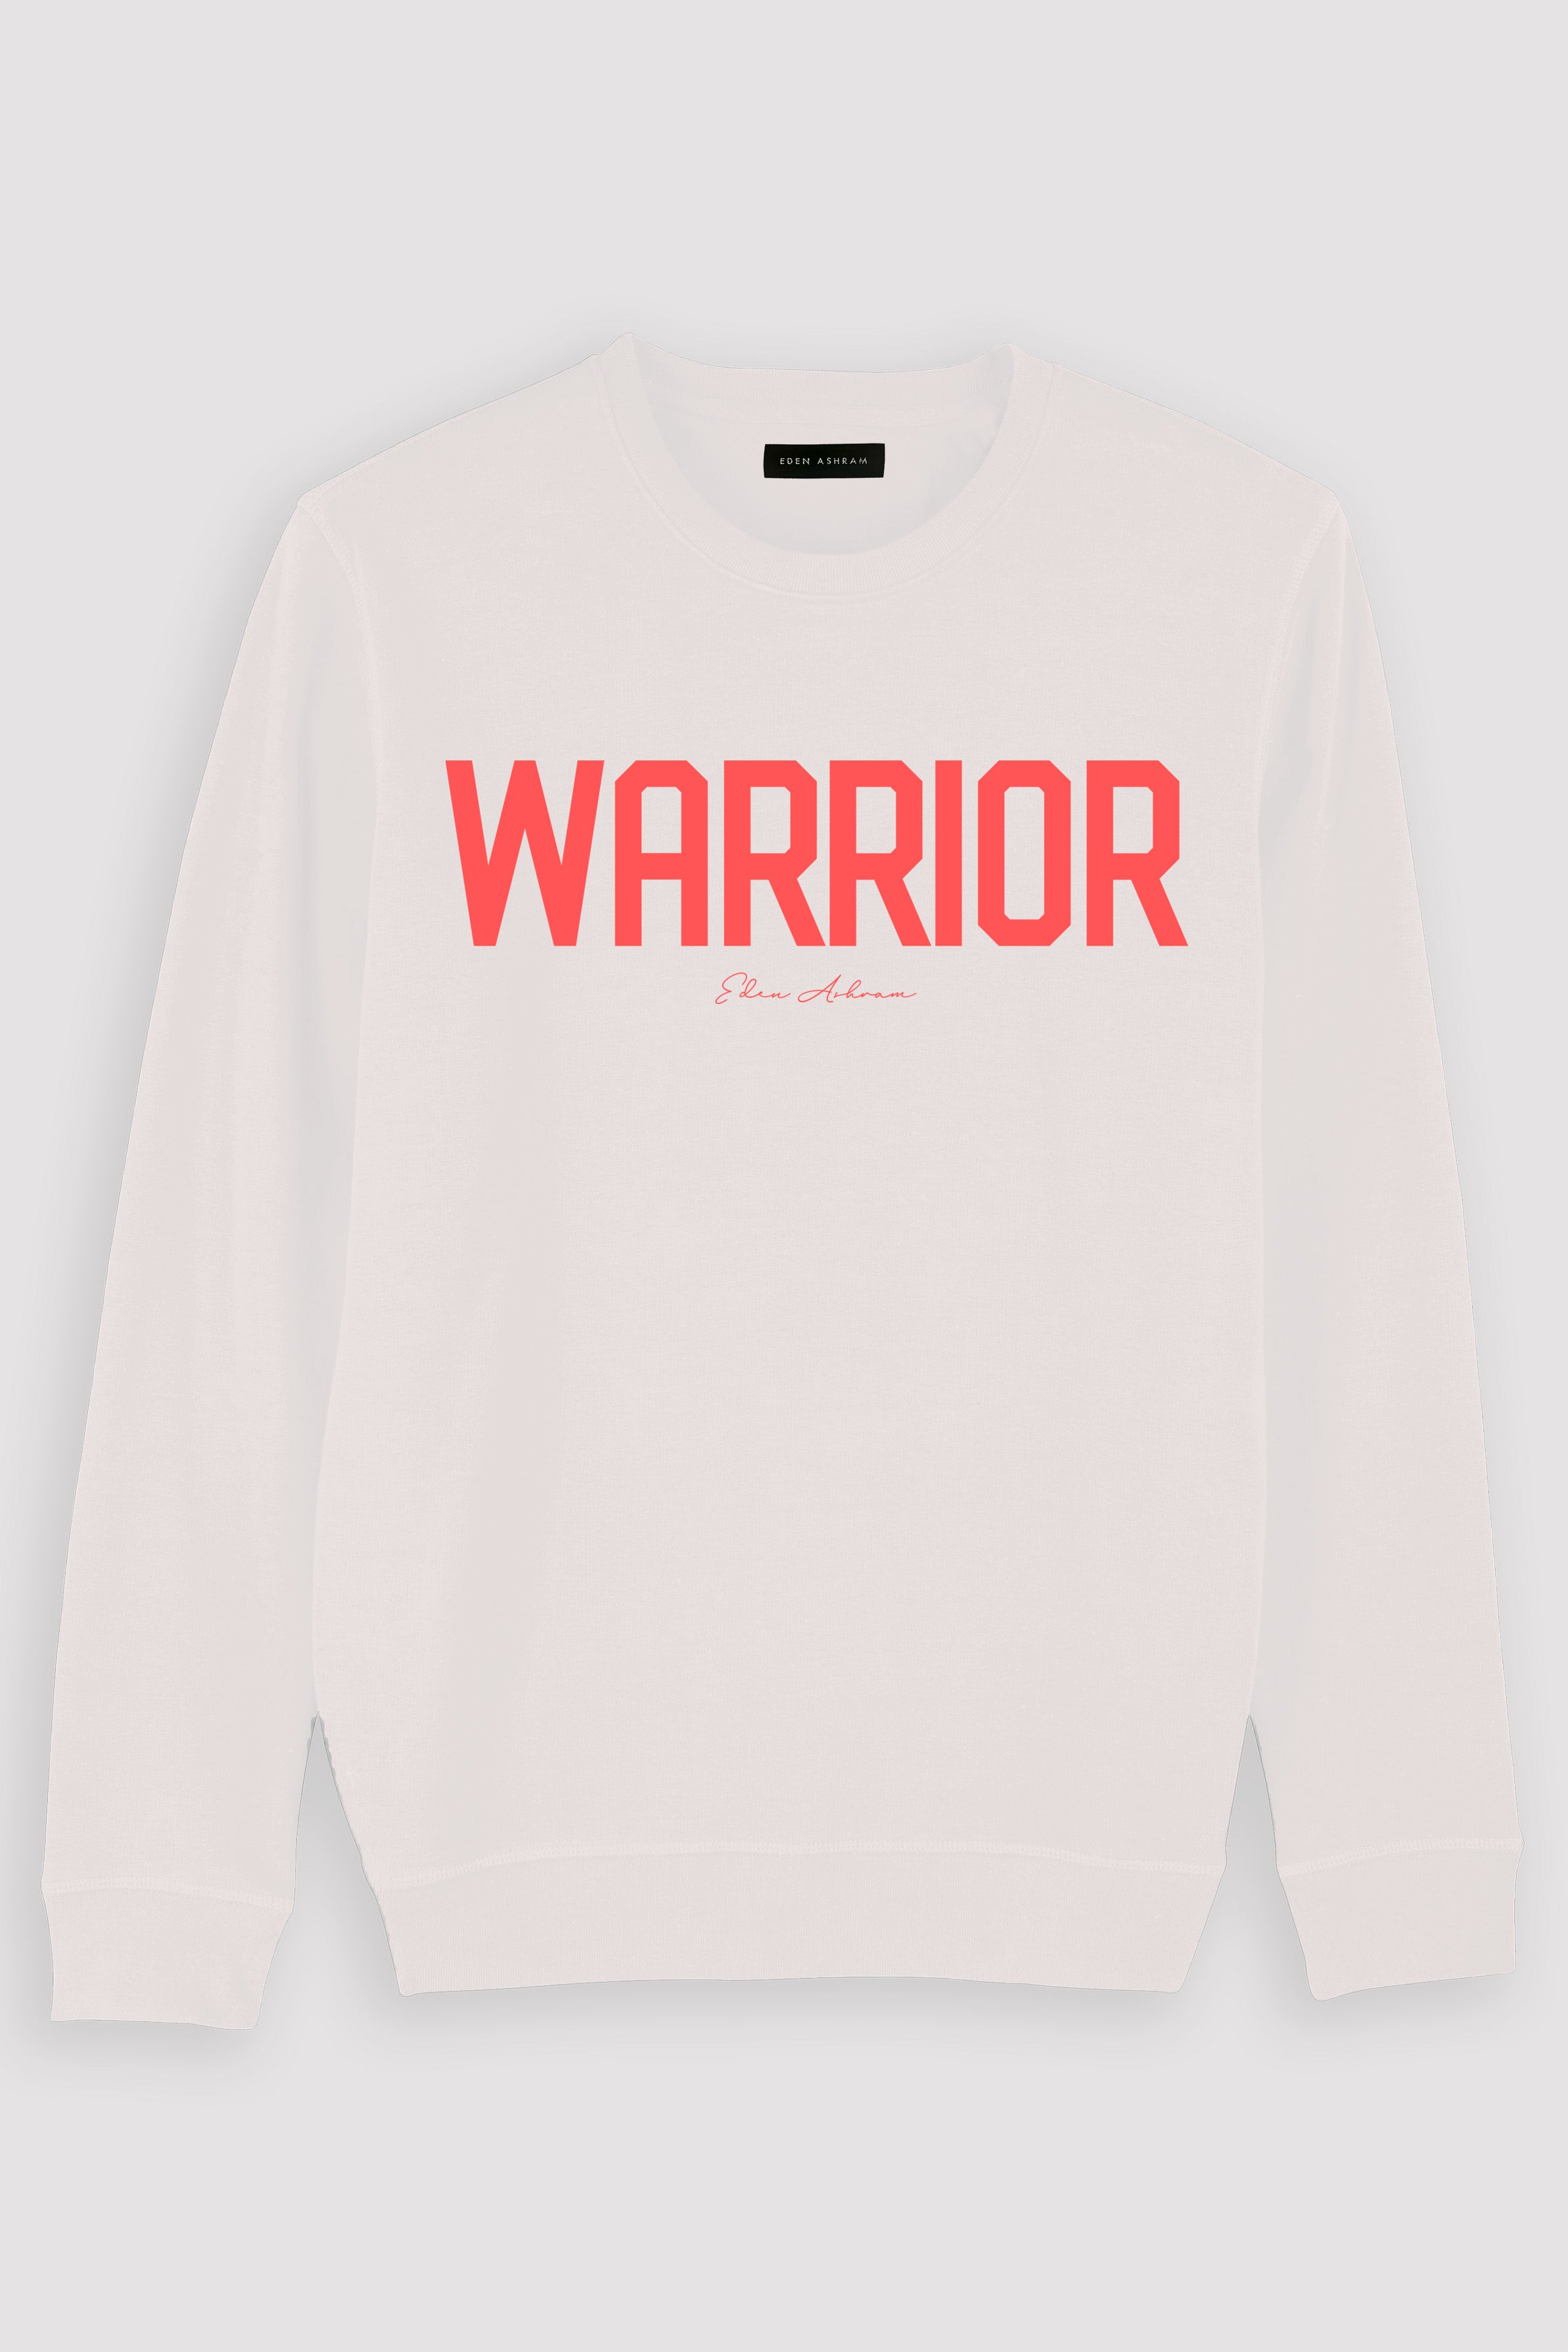 EDEN ASHRAM Warrior Premium Crew Neck Sweatshirt White